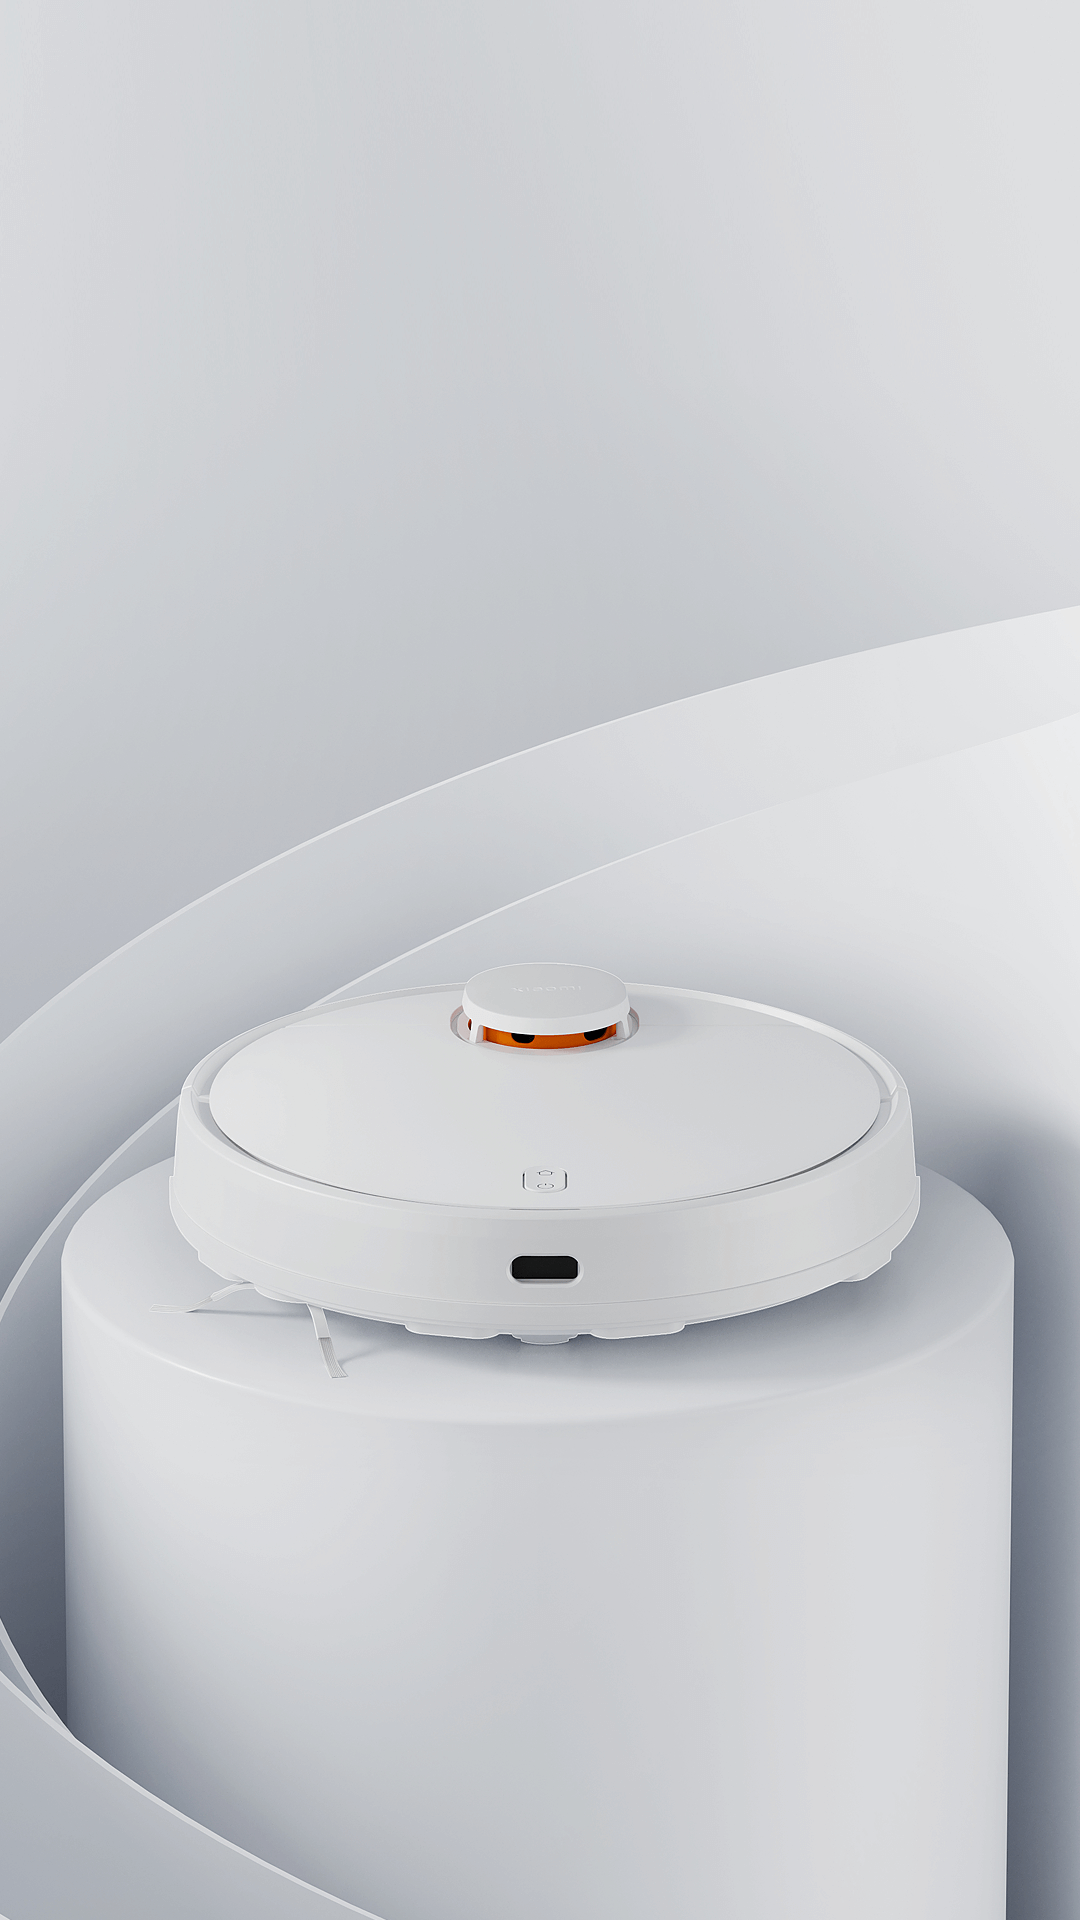 Xiaomi Robot Vacuum S12 - Robot Aspirador y friegasuelos con Sistema  Inteligente de navegación láser 